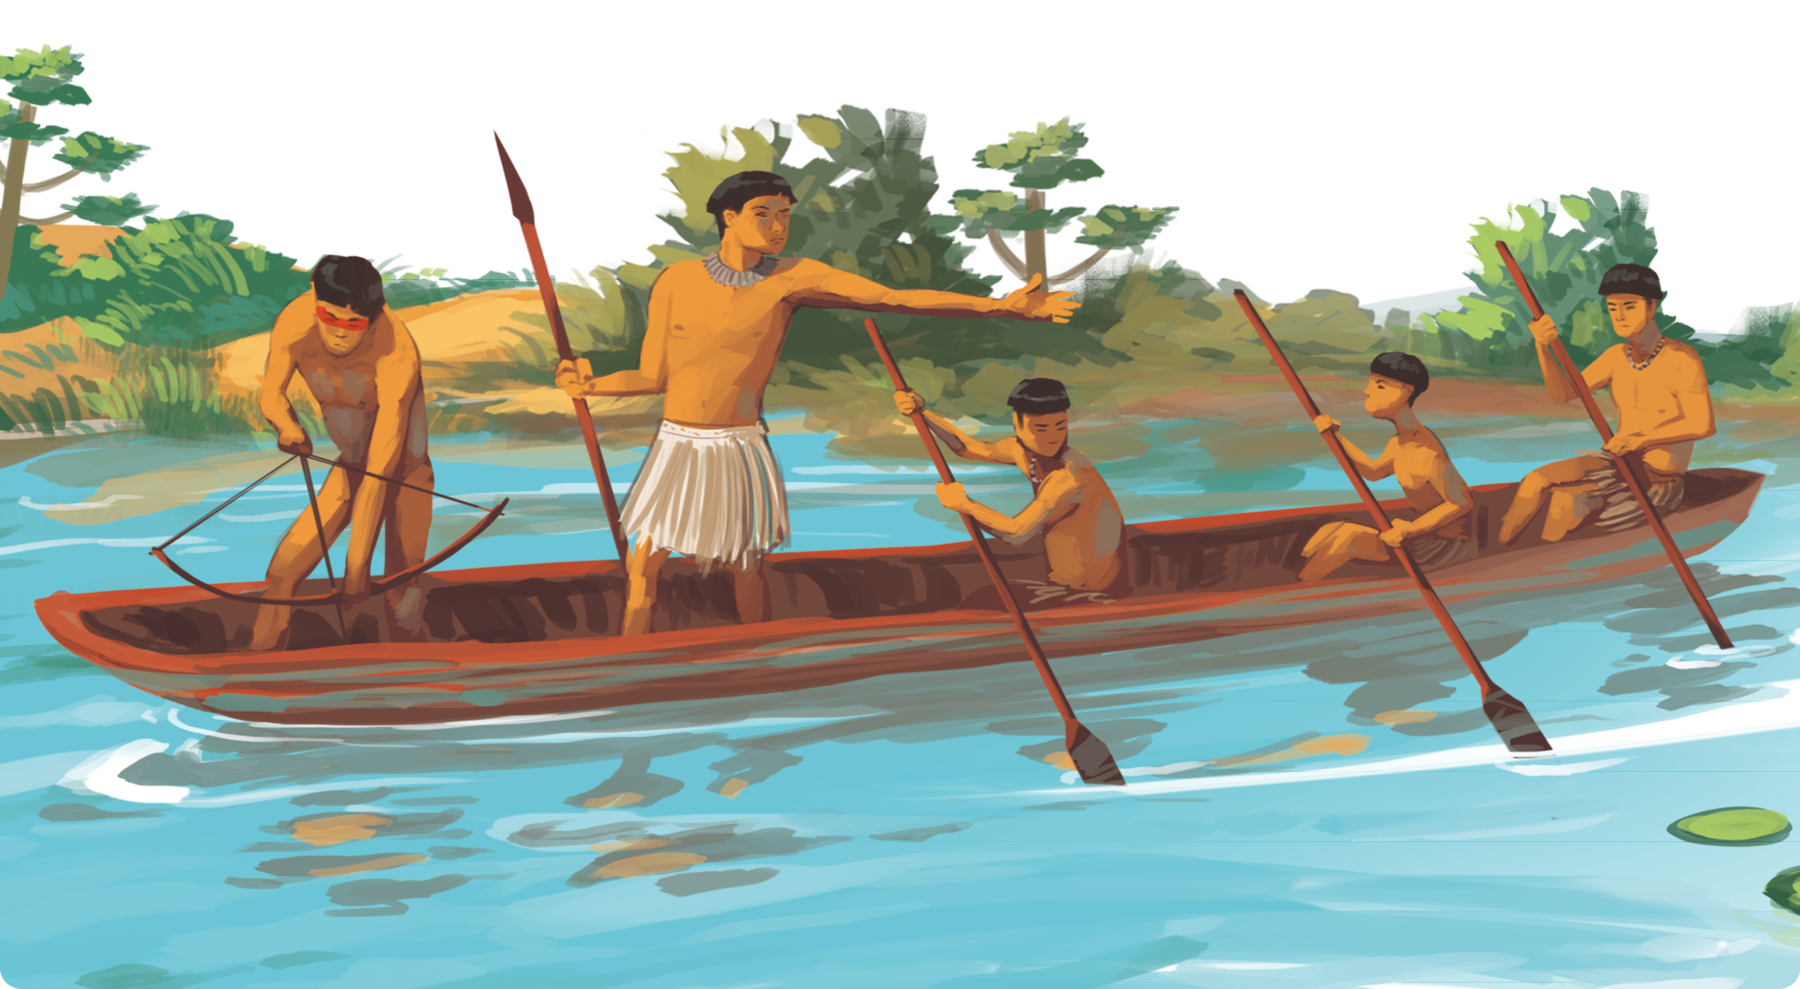 Ilustração. Homens indígenas dentro de uma embarcação a remo. À esquerda, um indígena segurando um arco e flecha, apontando para um corpo de água. Ao lado, um indígena, segurando uma lança, apontando o braço para a direita. À direita, três homens indígenas com remos na mão. Ao fundo, vegetação.